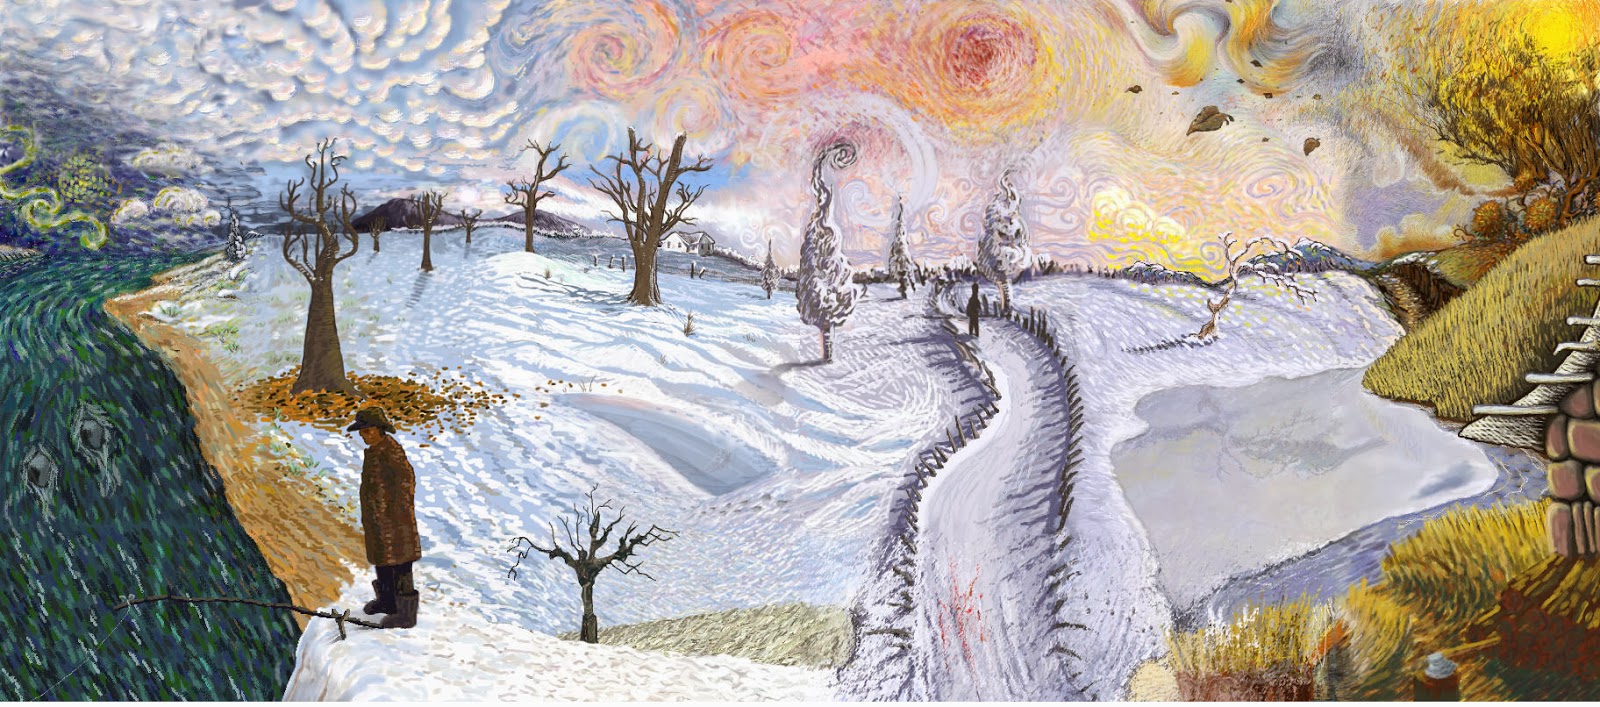 Kindergarten Art Class: Vincent van Gogh "Χειμωνιάτικο τοπίο "